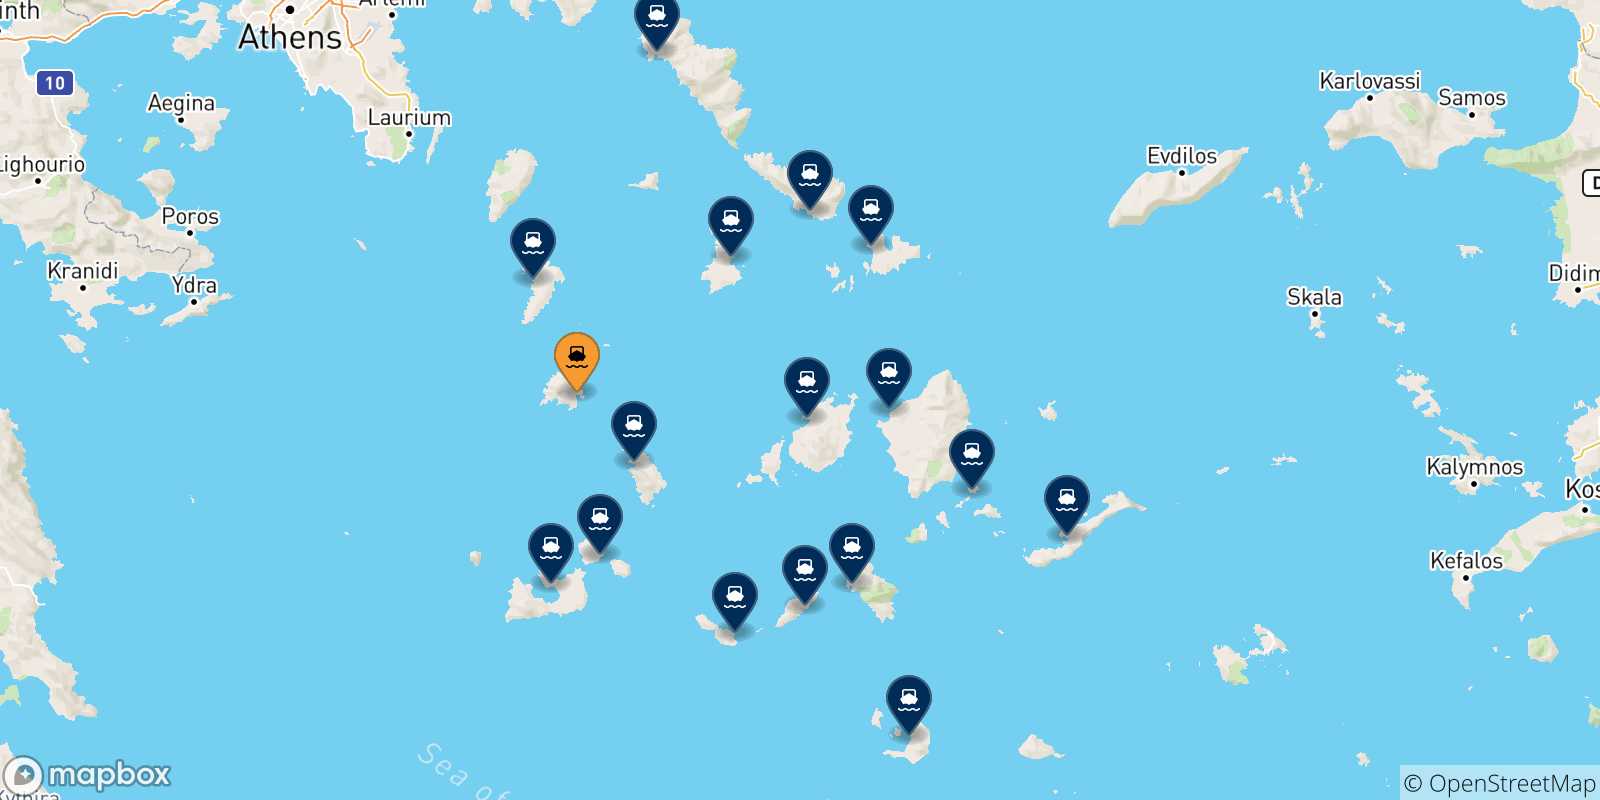 Mappa delle possibili rotte tra Serifos e le Isole Cicladi